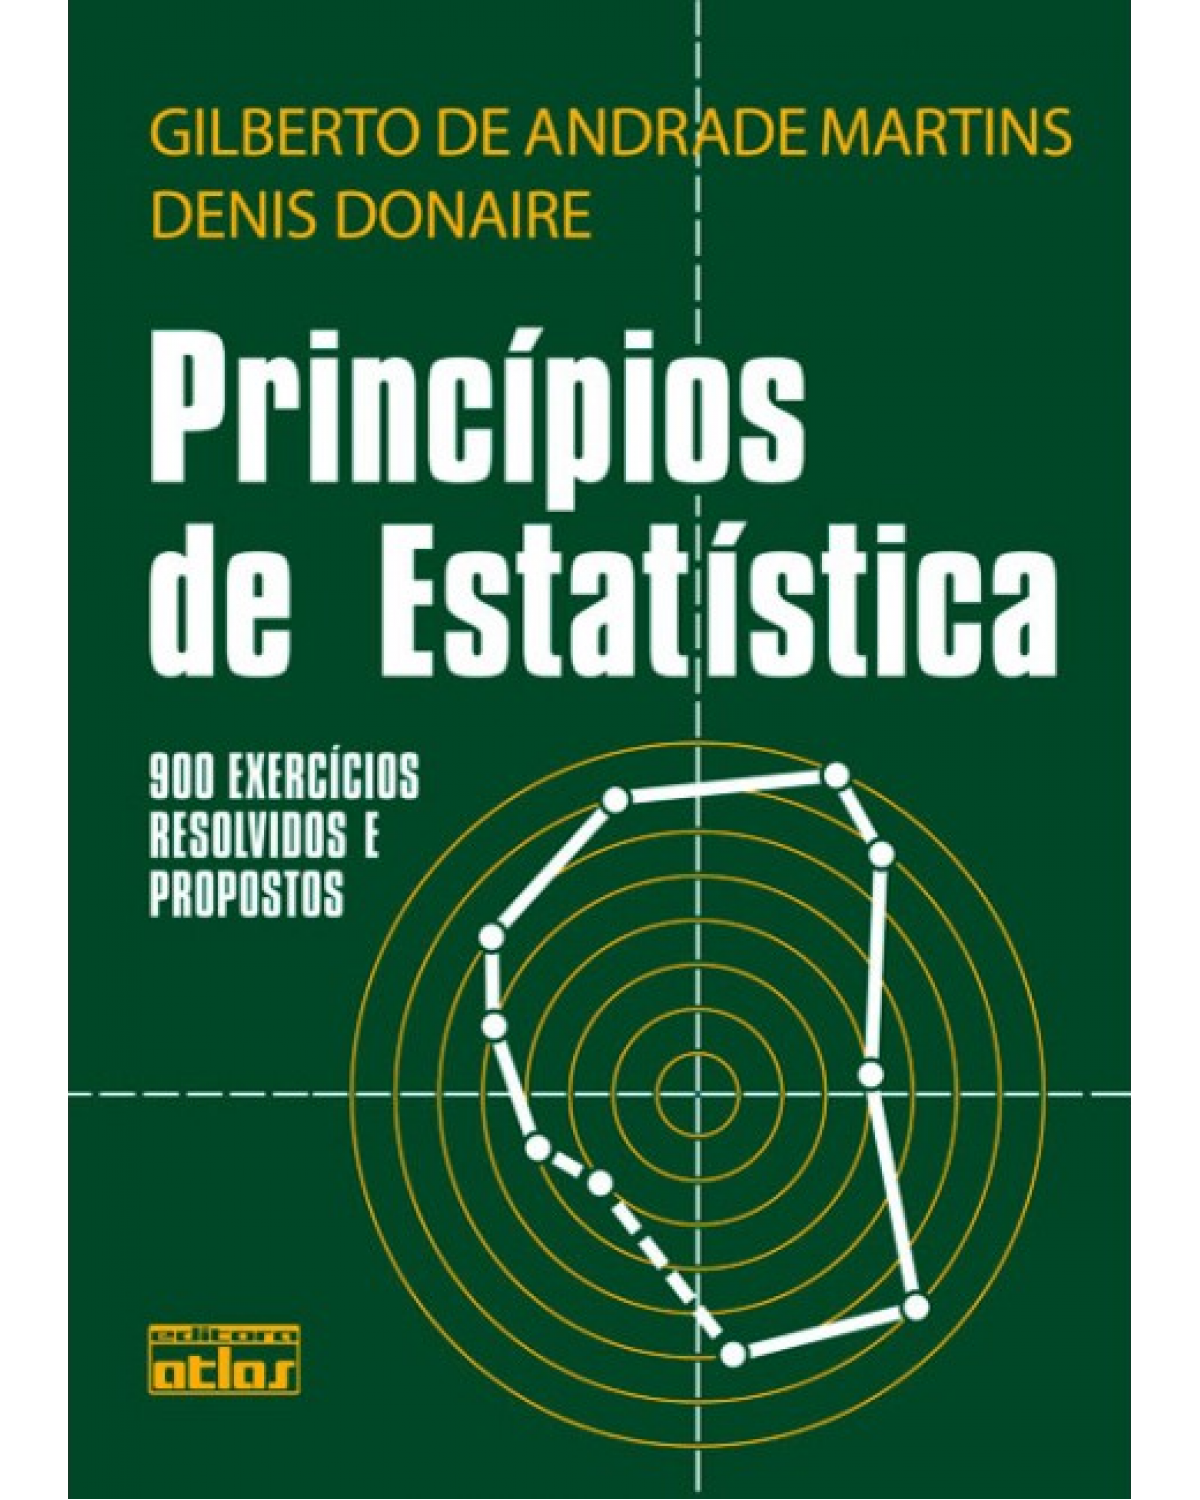 Princípios de estatística - 900 exercícios resolvidos e propostos - 4ª Edição | 1990